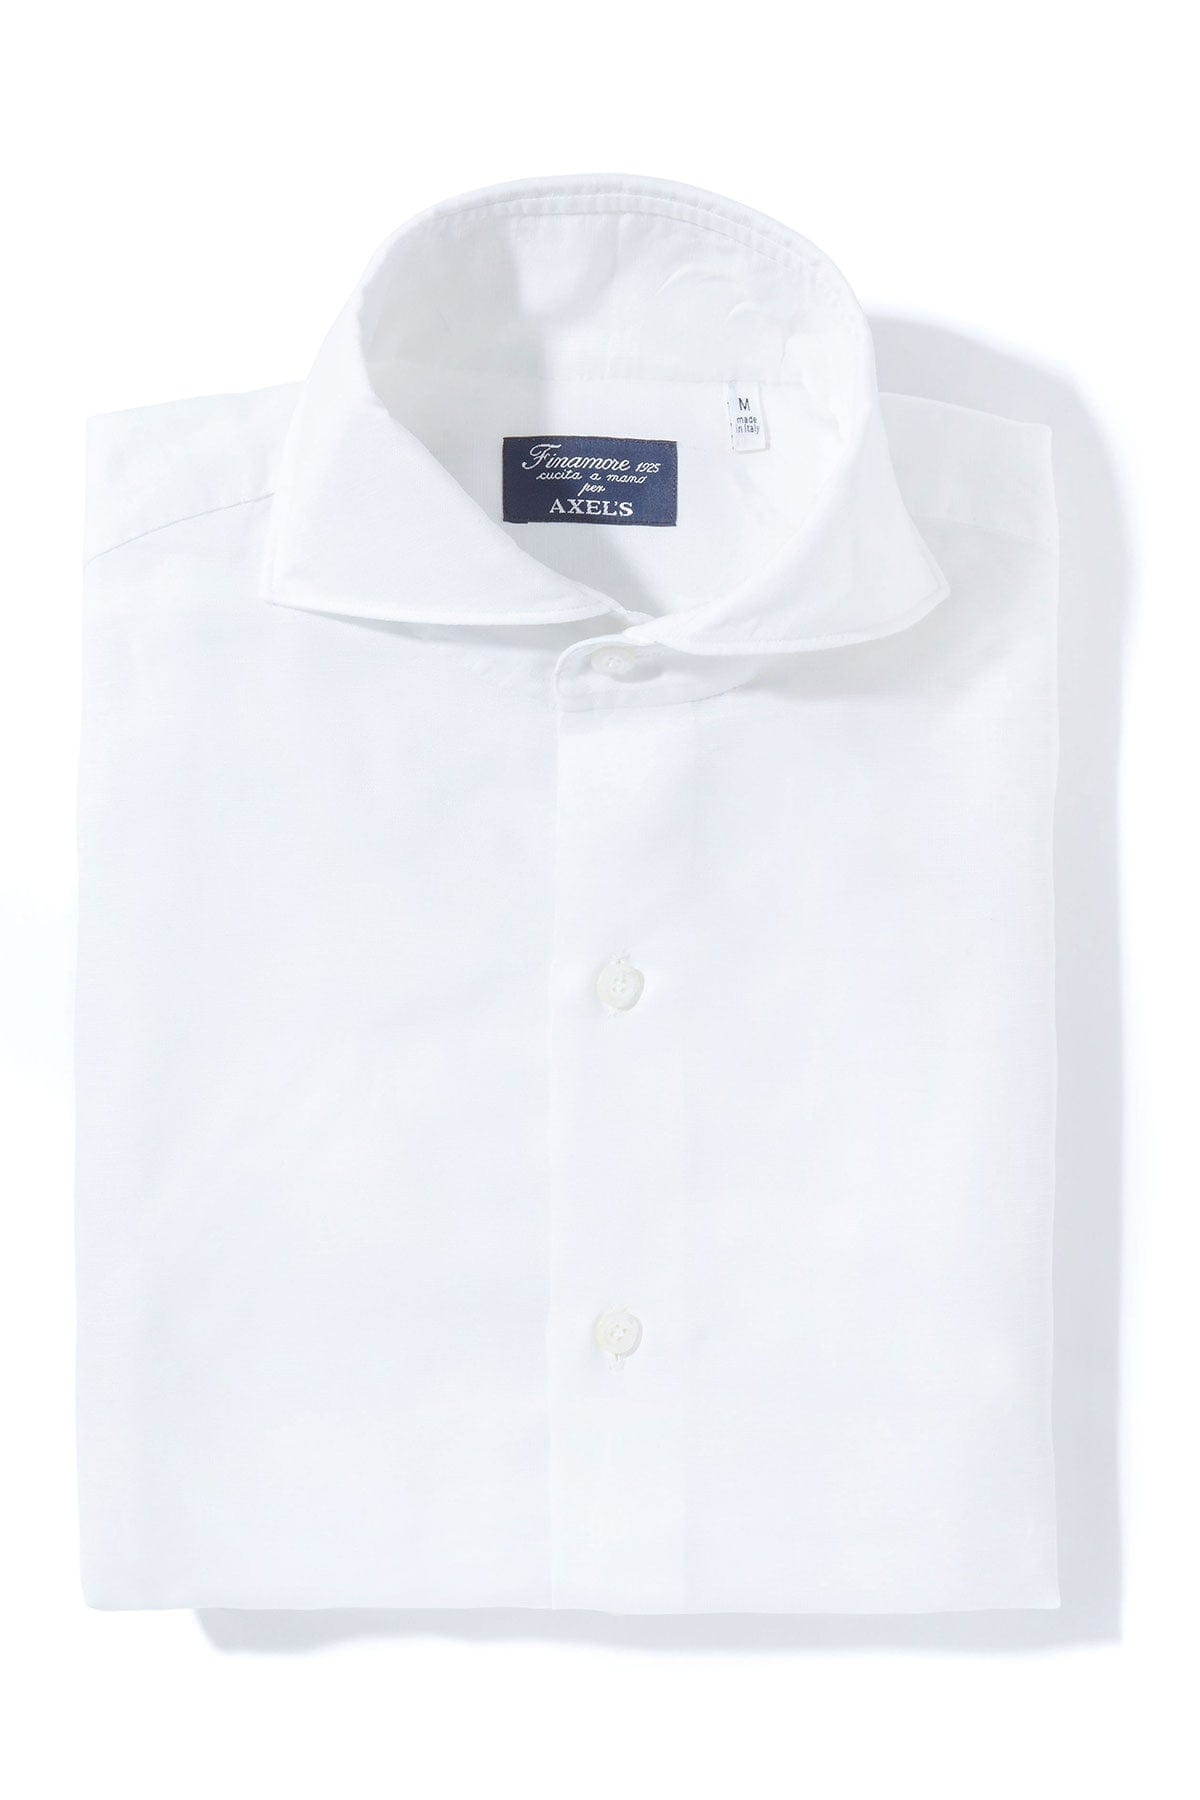 Andorra Carlo Riva Cotton Linen Shirt In White - AXEL'S